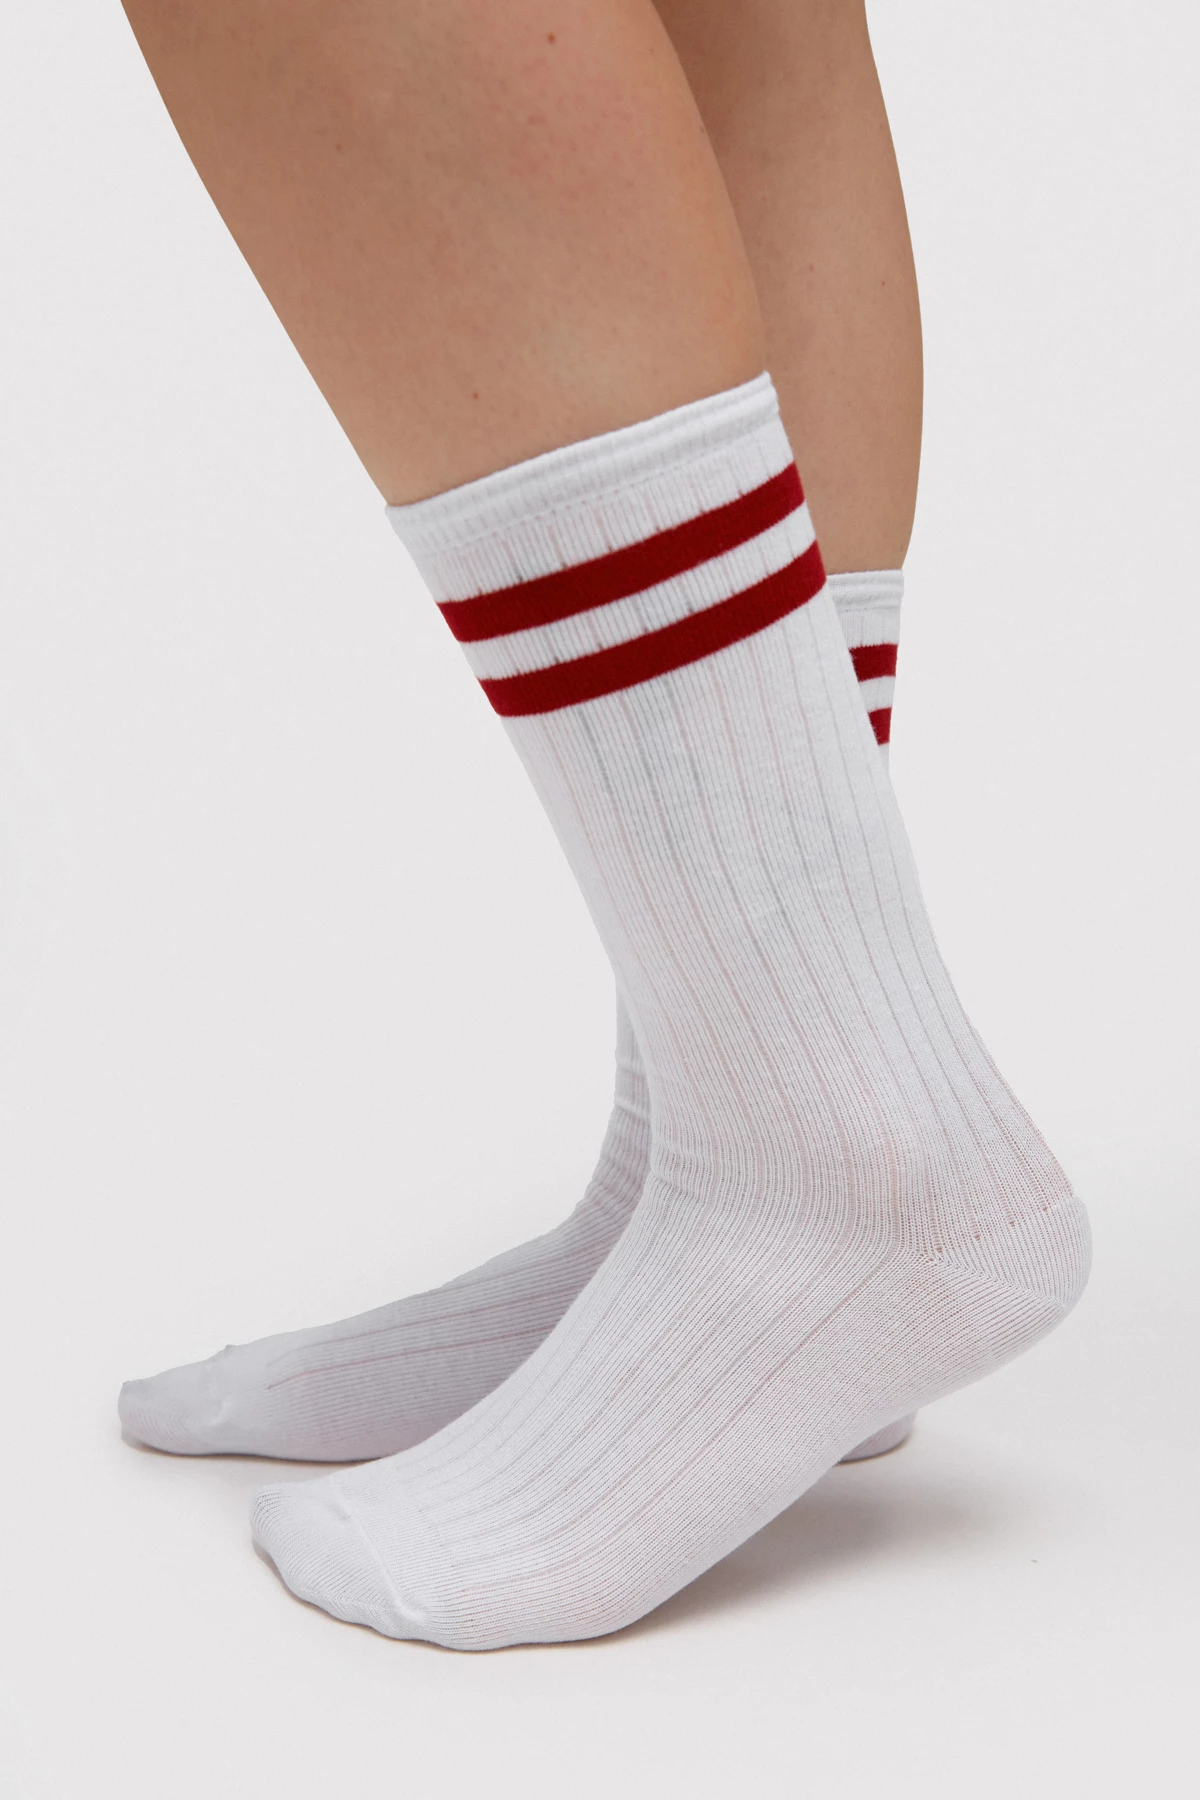 Високі білі бавовняні шкарпетки з бордовими смужками, фото 1